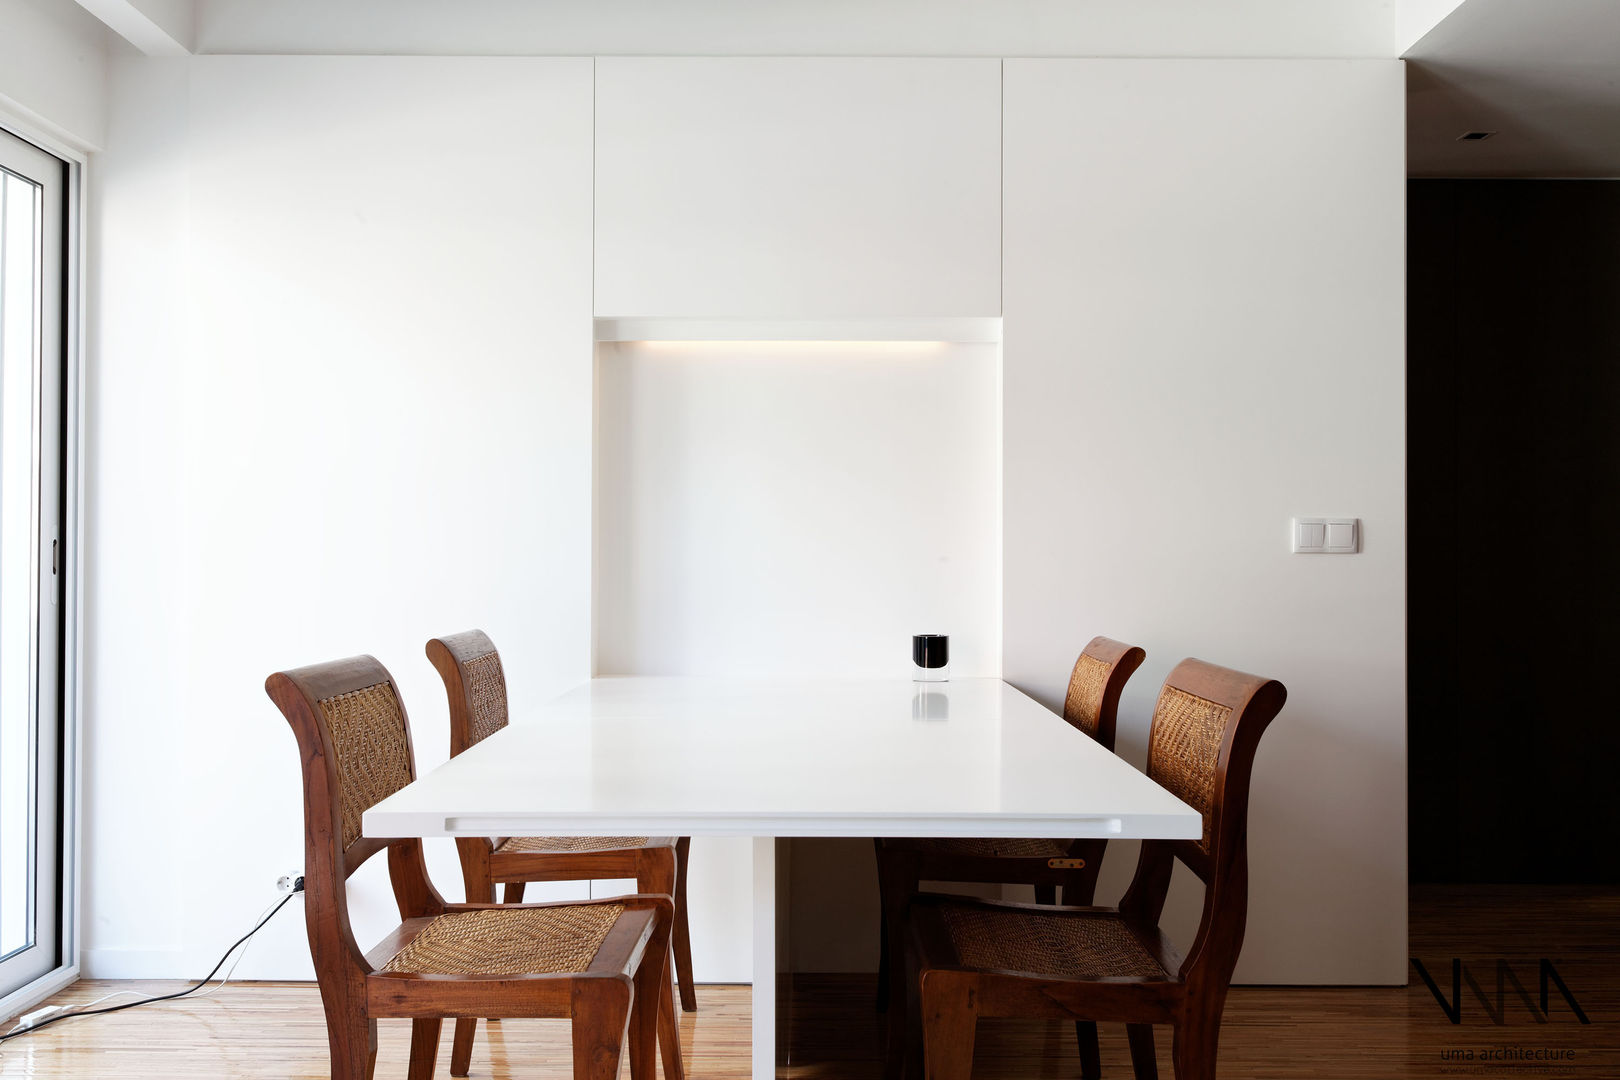 Remodelação de Apartamento Pinheiro Chagas, UMA Collective - Architecture UMA Collective - Architecture Modern dining room